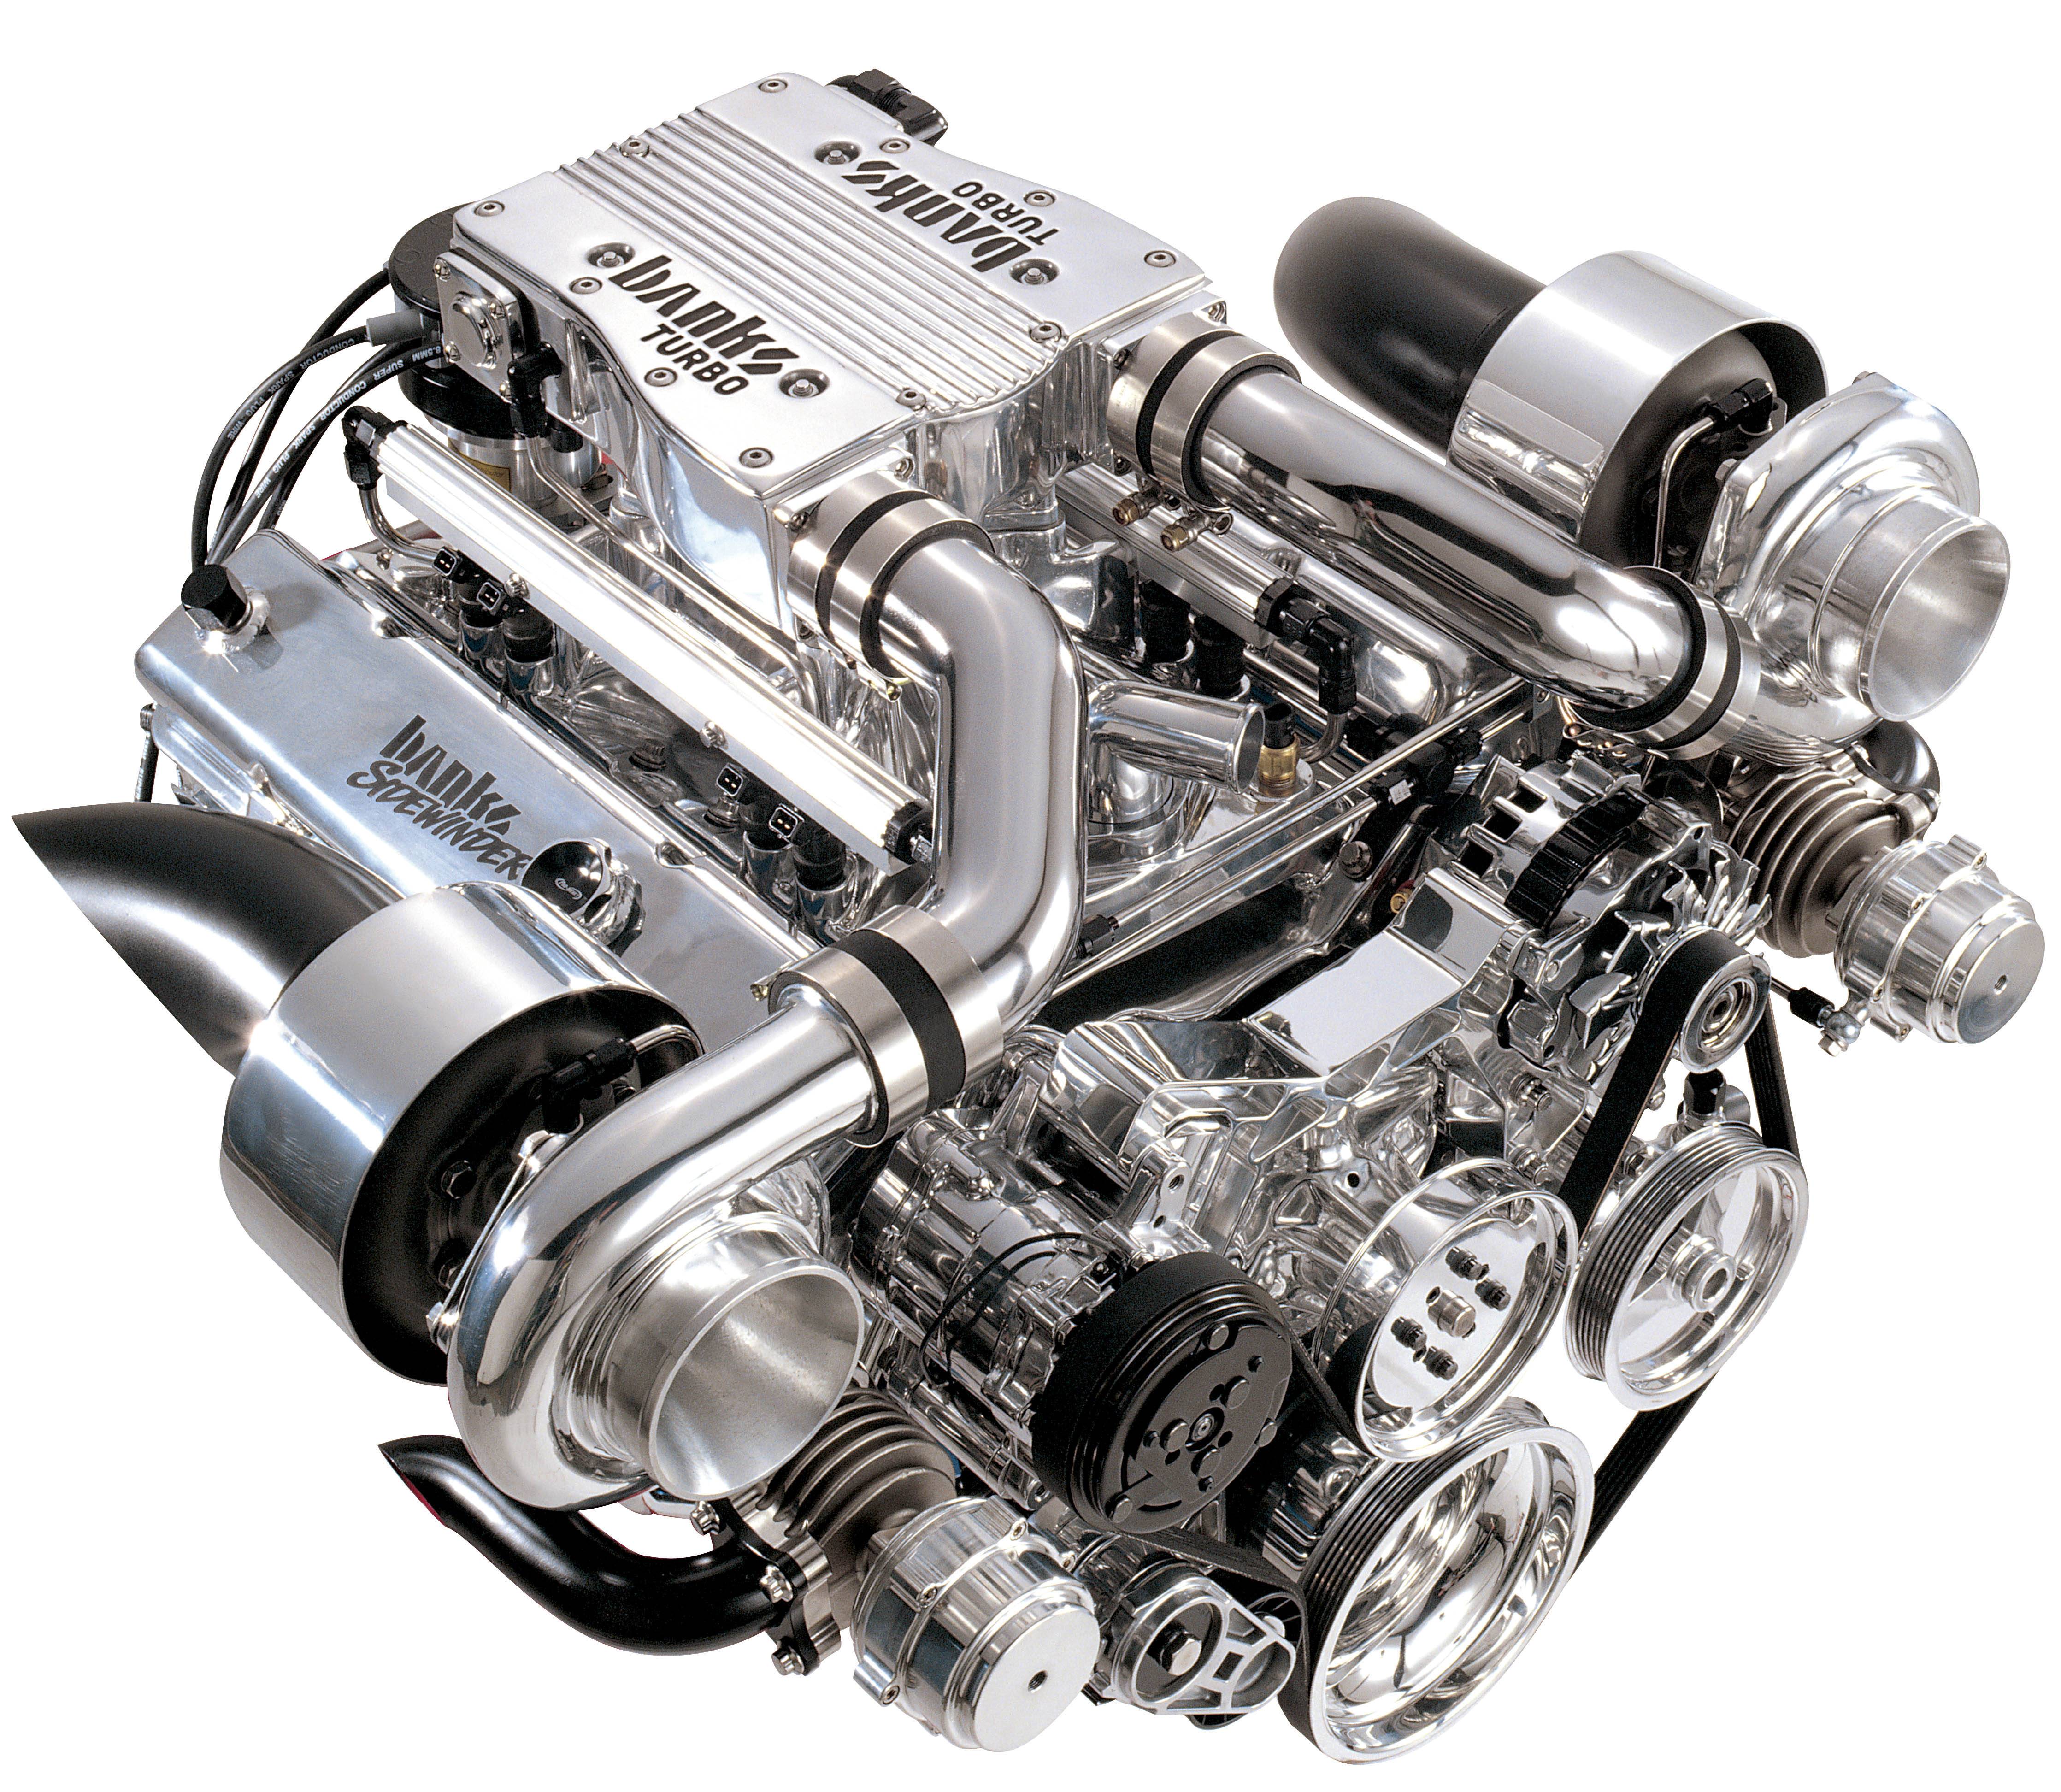 Атмосферный двигатель. выберем что лучше - атмосферный двигатель или турбированный